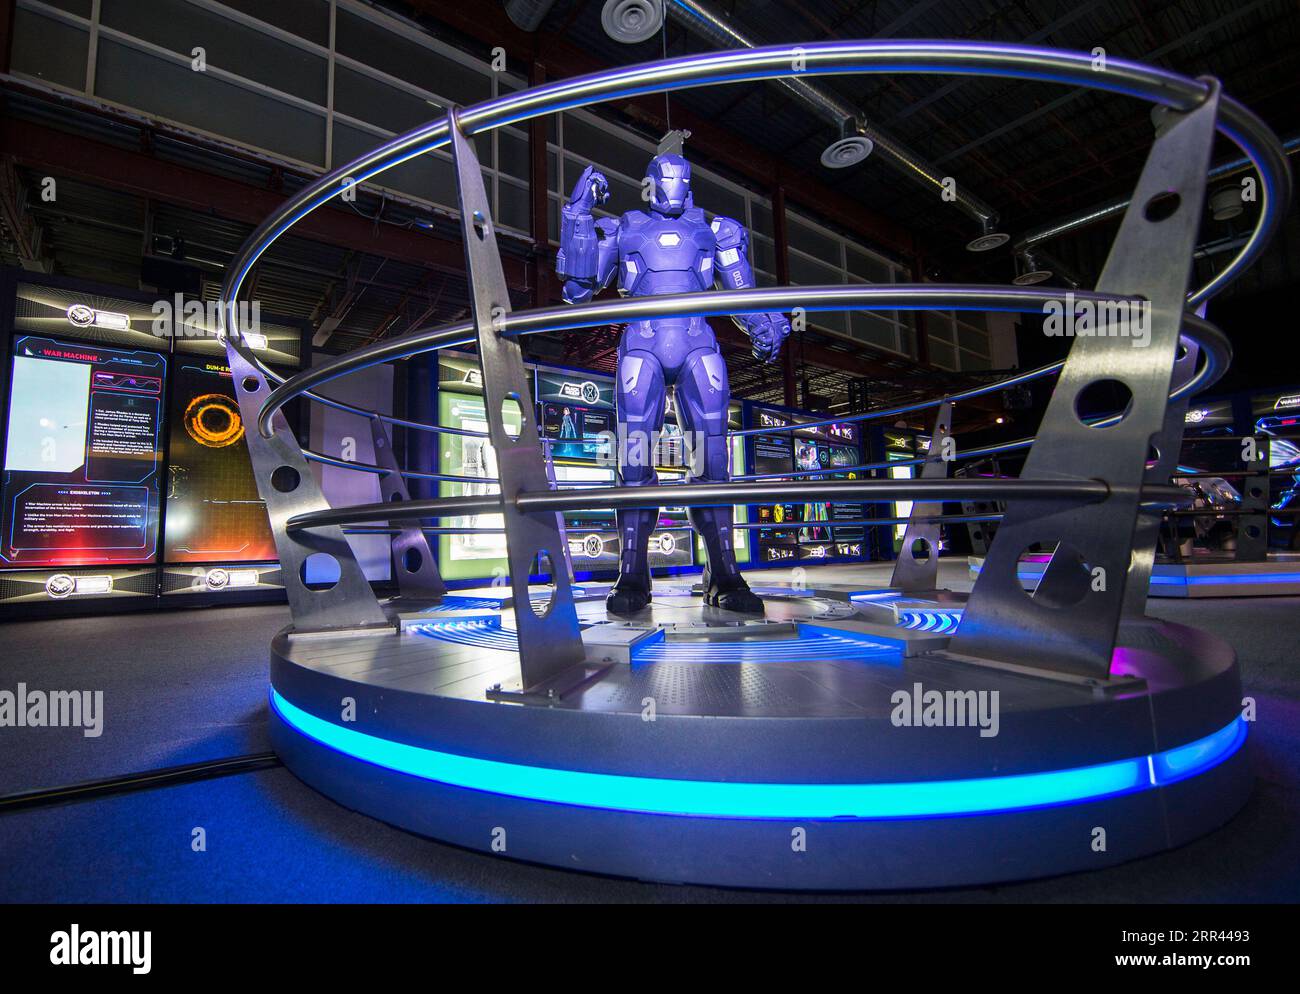 201119 -- TORONTO, le 19 novembre 2020 -- Un costume de machine de guerre est présenté à l'exposition Marvel Avengers S.T.A.T.I.O.N. lors de l'avant-première médiatique au Yorkdale Shopping Center à Toronto, Canada, le 19 novembre 2020. Présentant l’univers cinématographique Marvel des super-héros, l’exposition sera ouverte au public du 20 novembre 2020 au 31 janvier 2021. Photo de /Xinhua CANADA-TORONTO-MARVEL AVENGERS-EXHIBITION ZouxZheng PUBLICATIONxNOTxINxCHN Banque D'Images